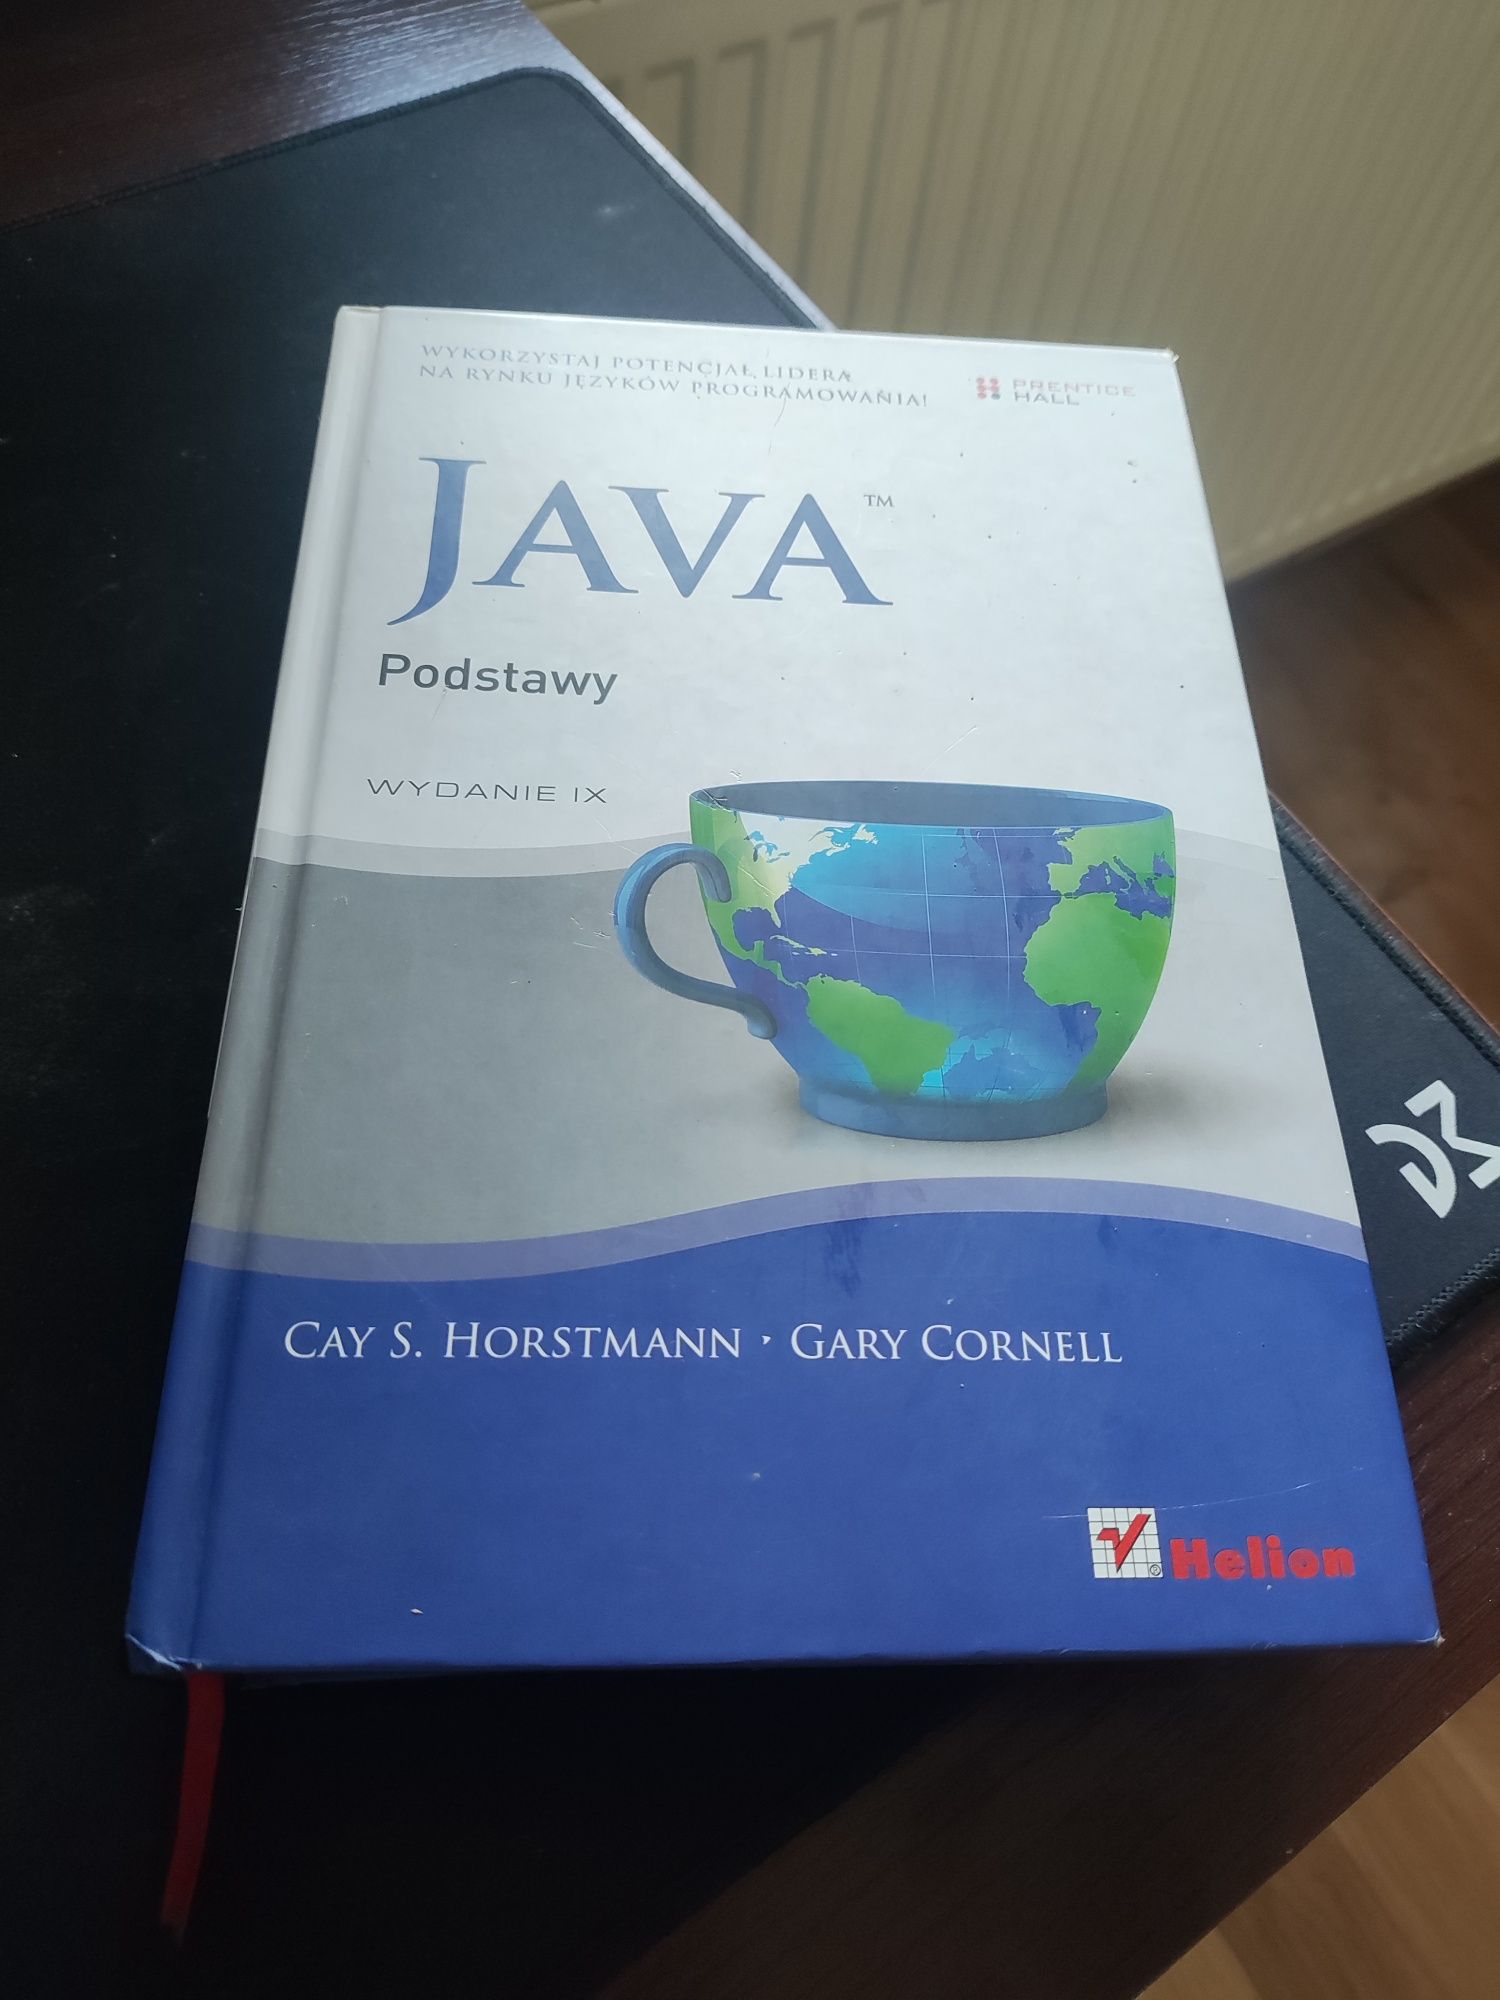 Java Podstawy wyd. IX - Cały S. Horstmann, Gary Cornell